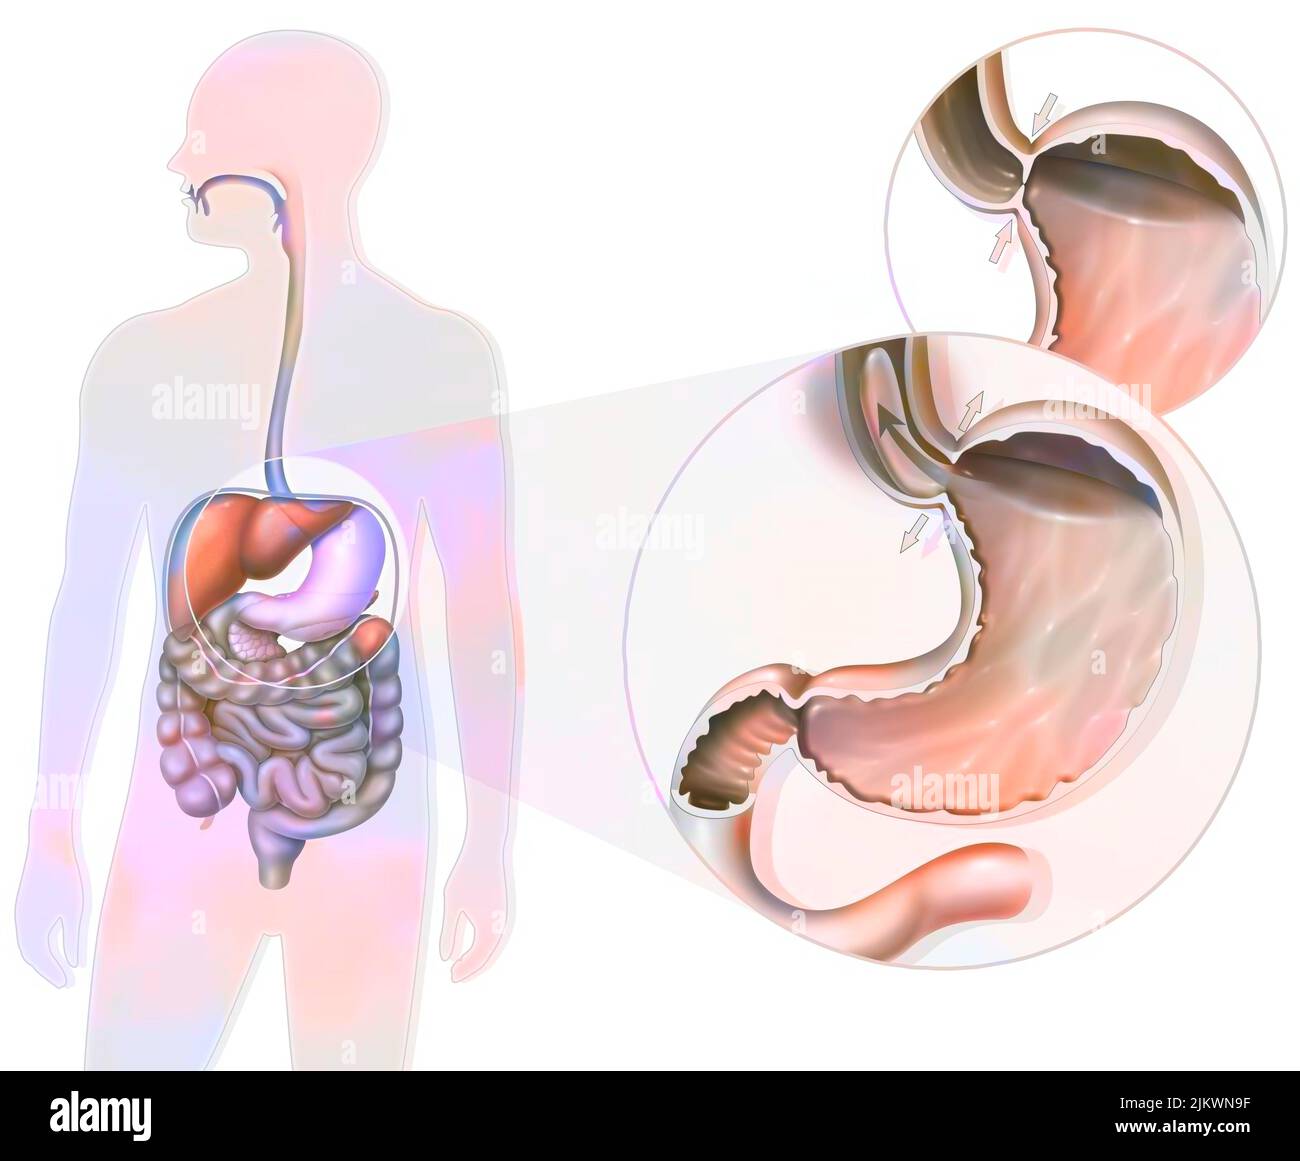 Gastroesophageal reflux disease: localization of the stomach and zoom of the gastroesophageal sphincter. Stock Photo